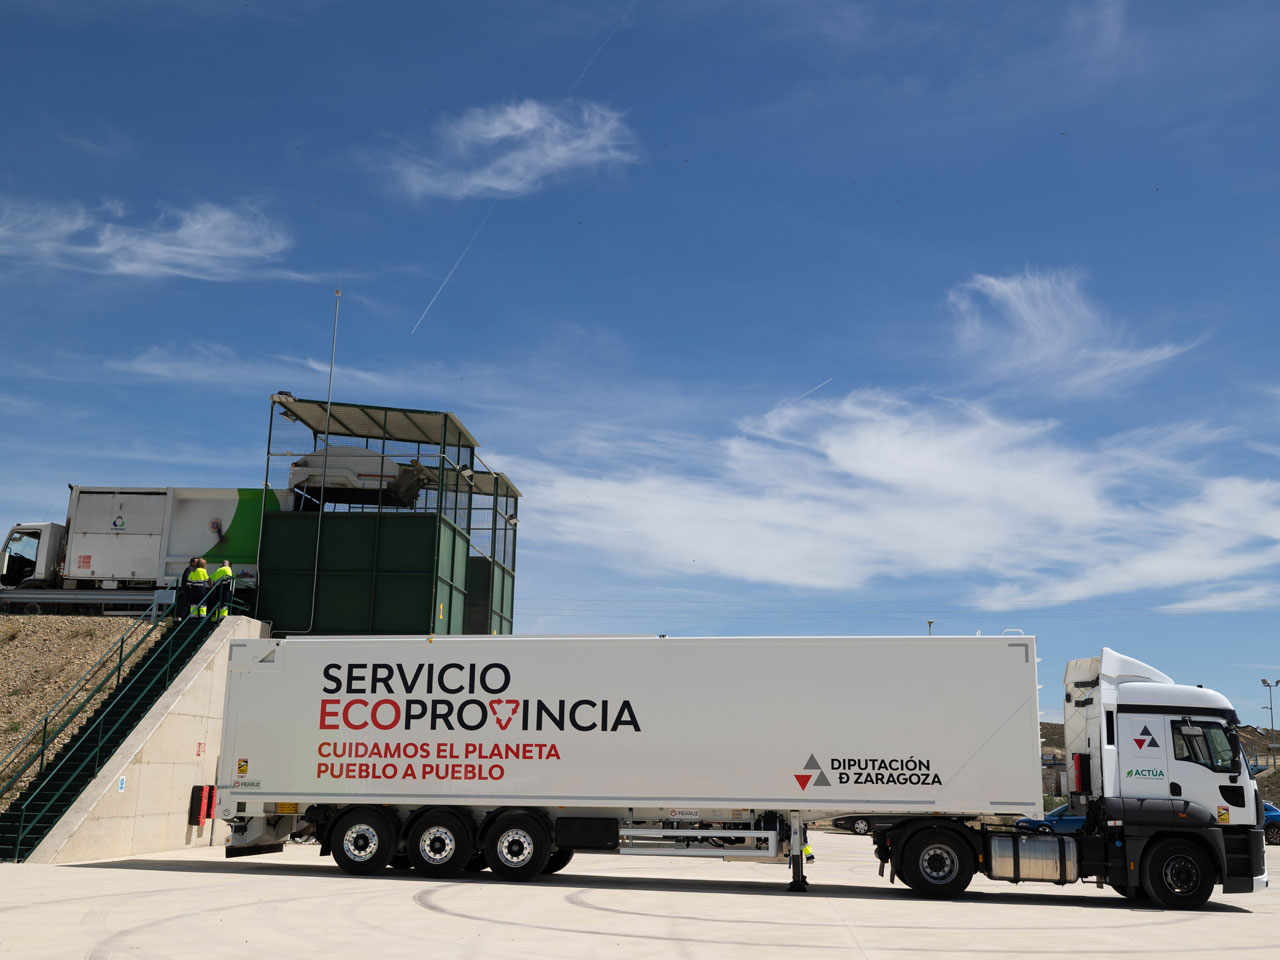 El servicio EcoProvincia dará servicio a cerca de 200.000 vecinos de la provincia de Zaragoza